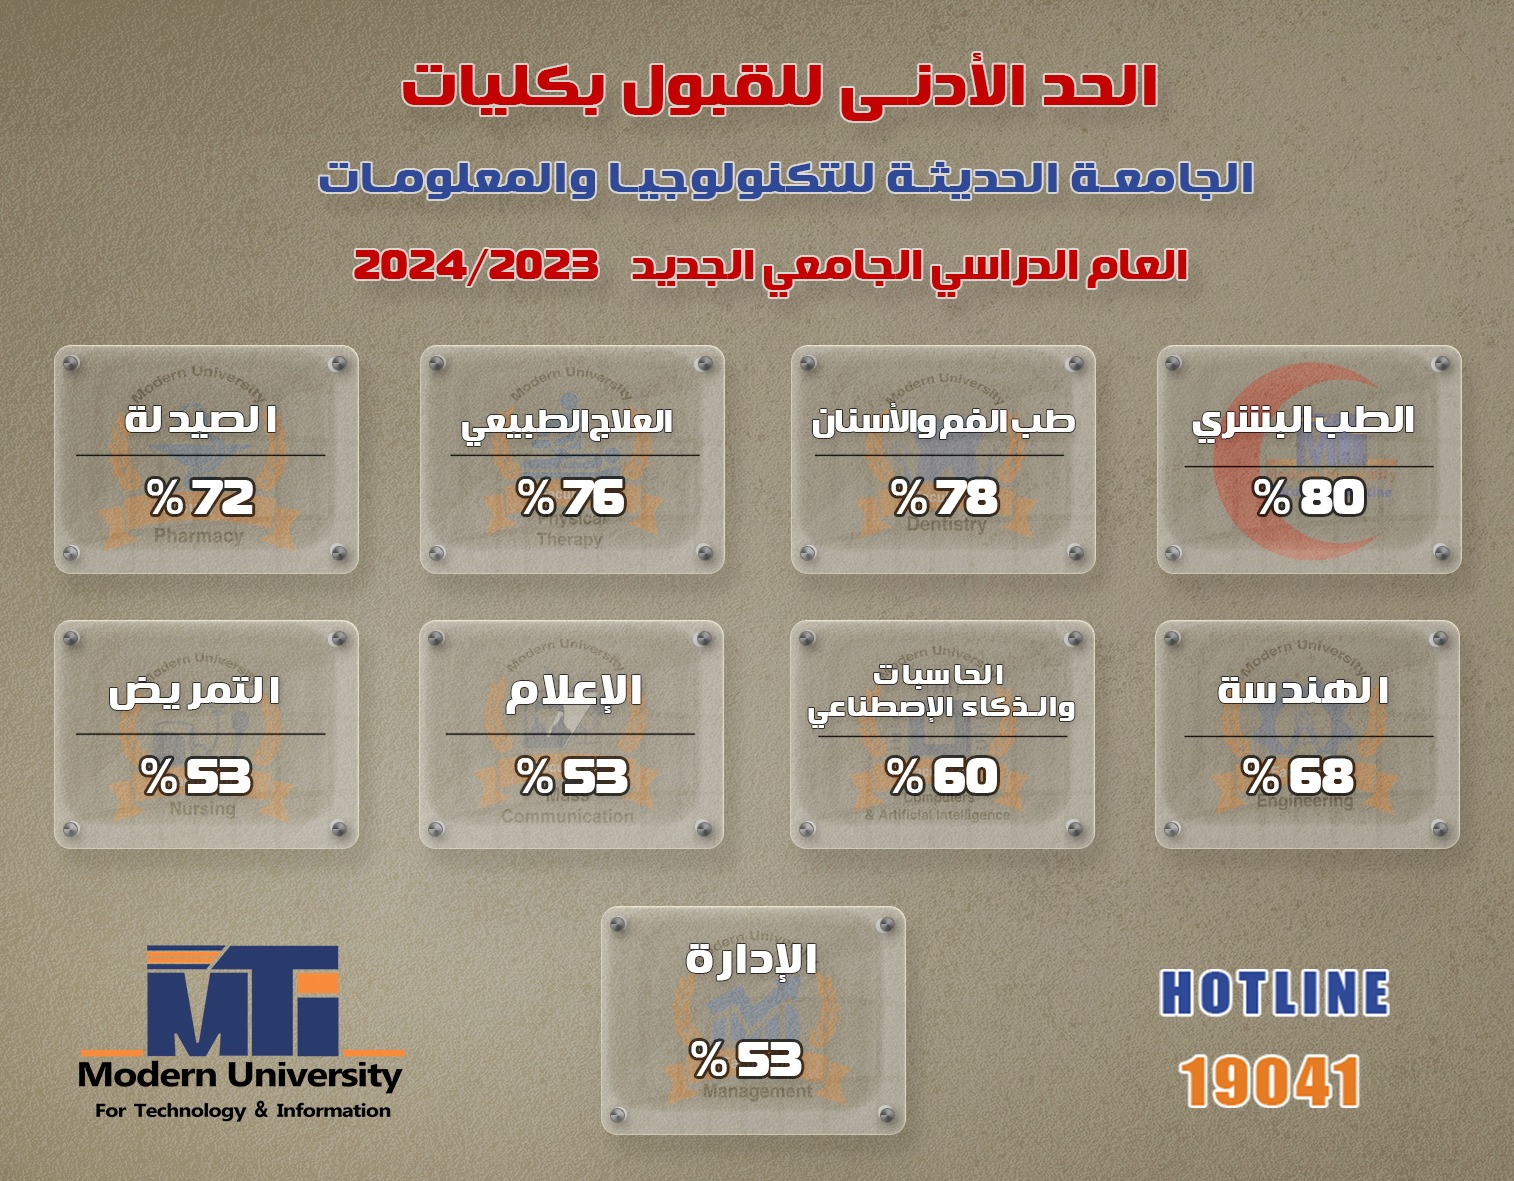 تنسيق جامعة MTI 2023 - 2024